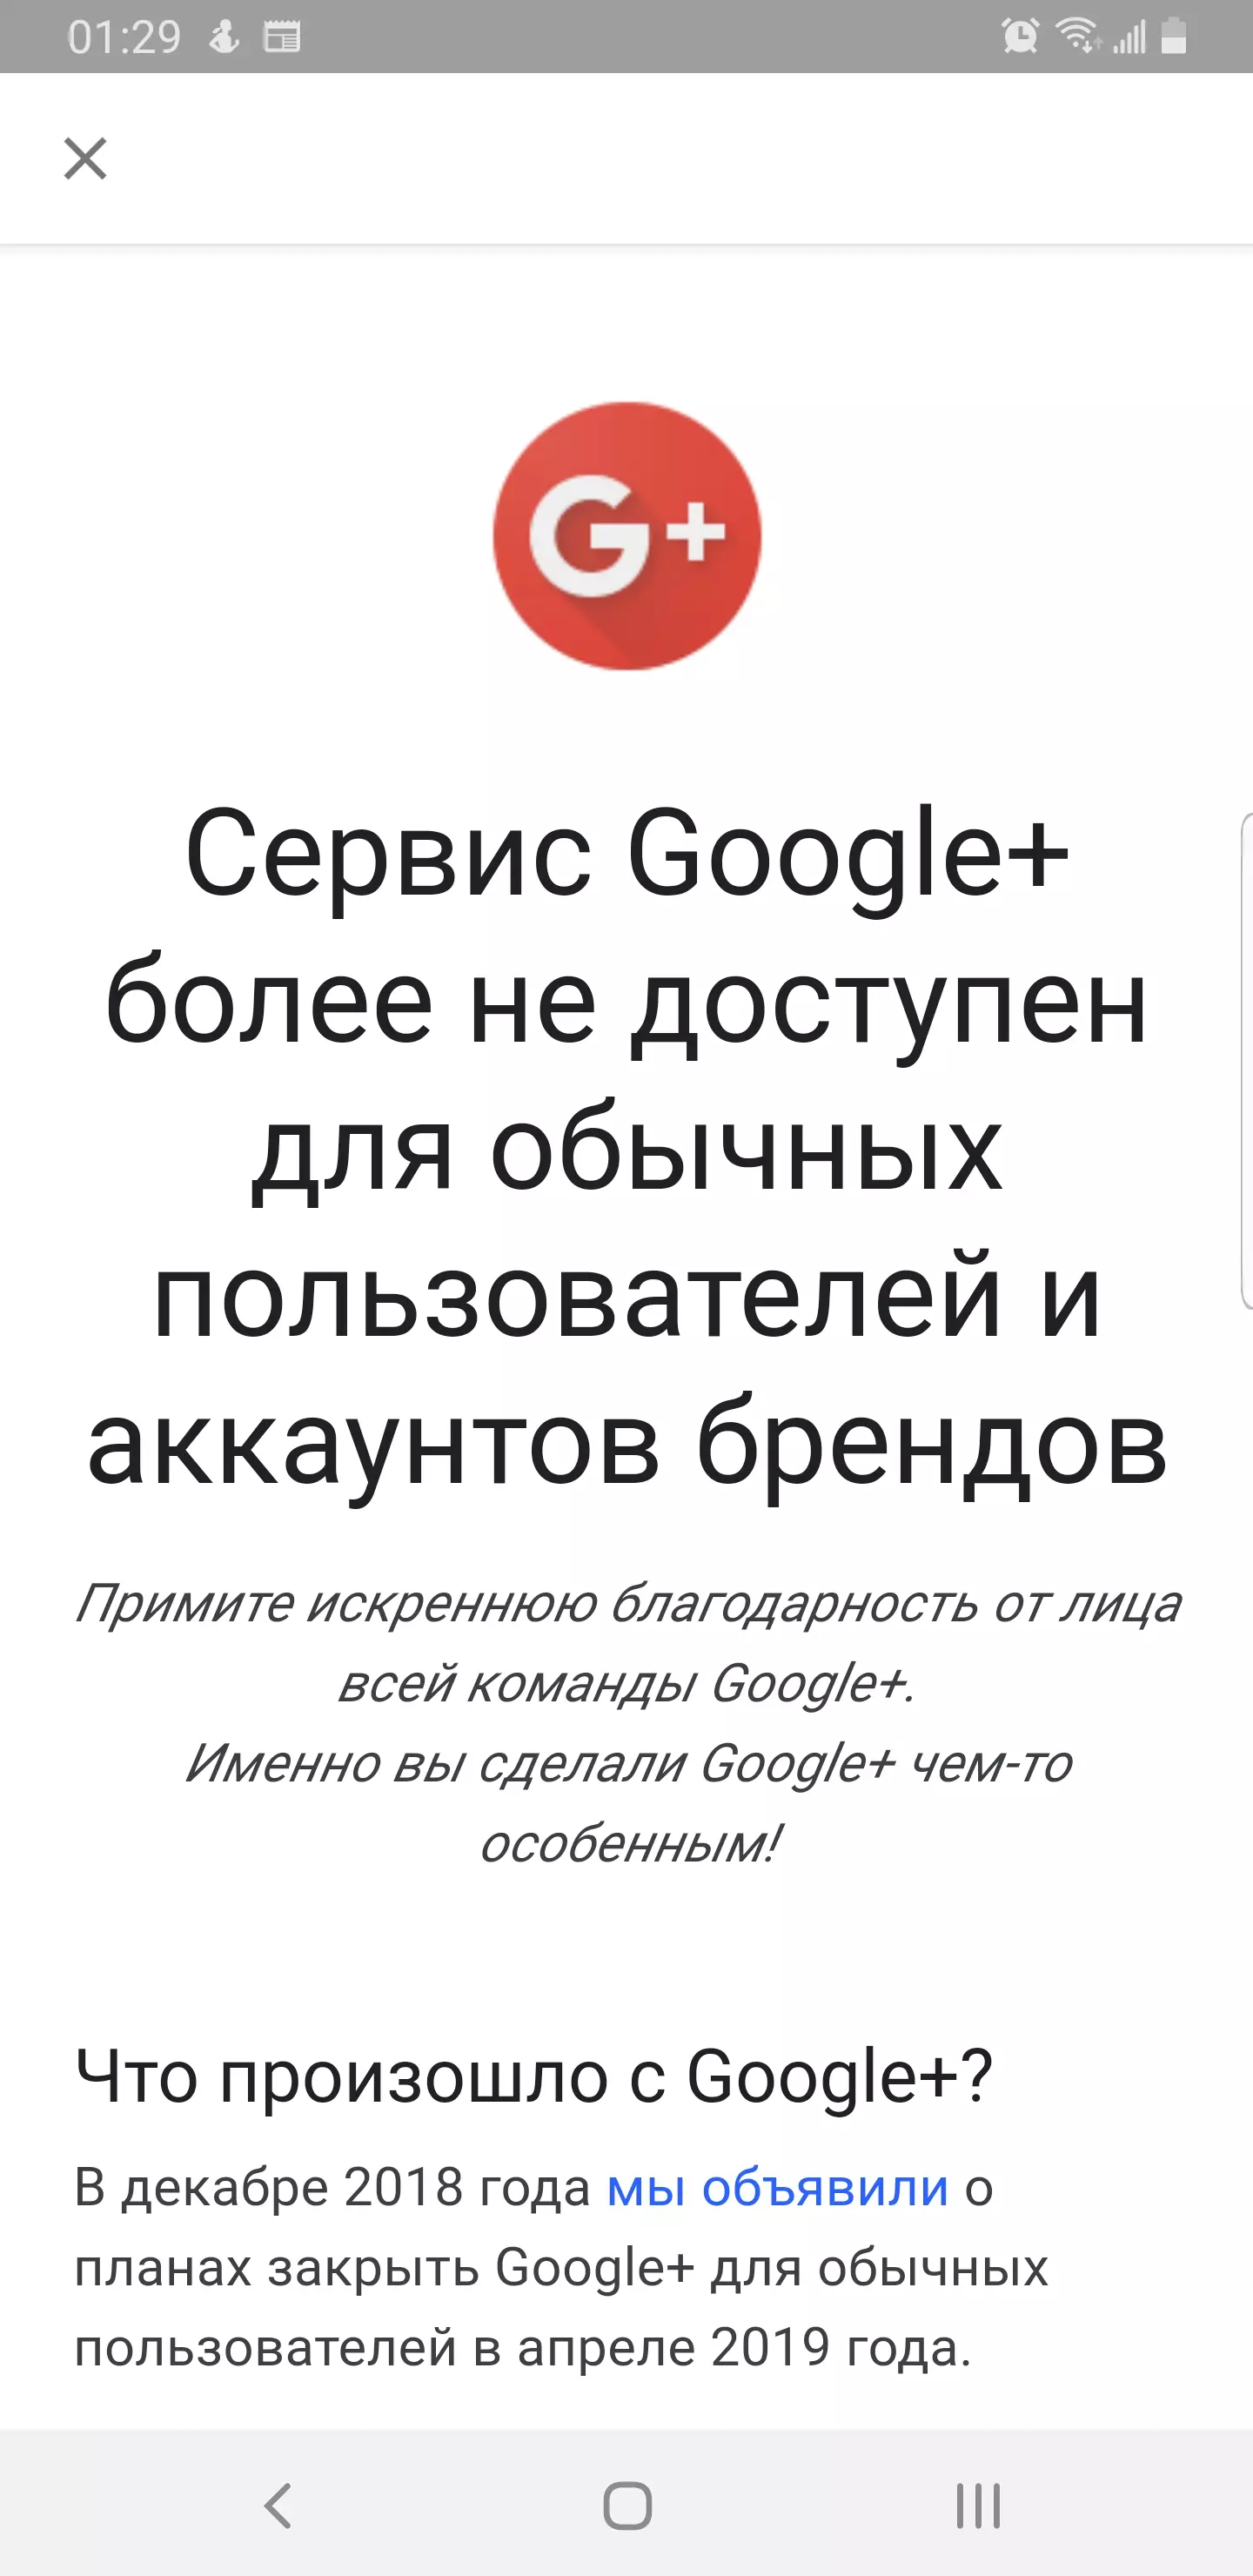 Такое  сообщение получают пользователи при попытке зайти в Google+